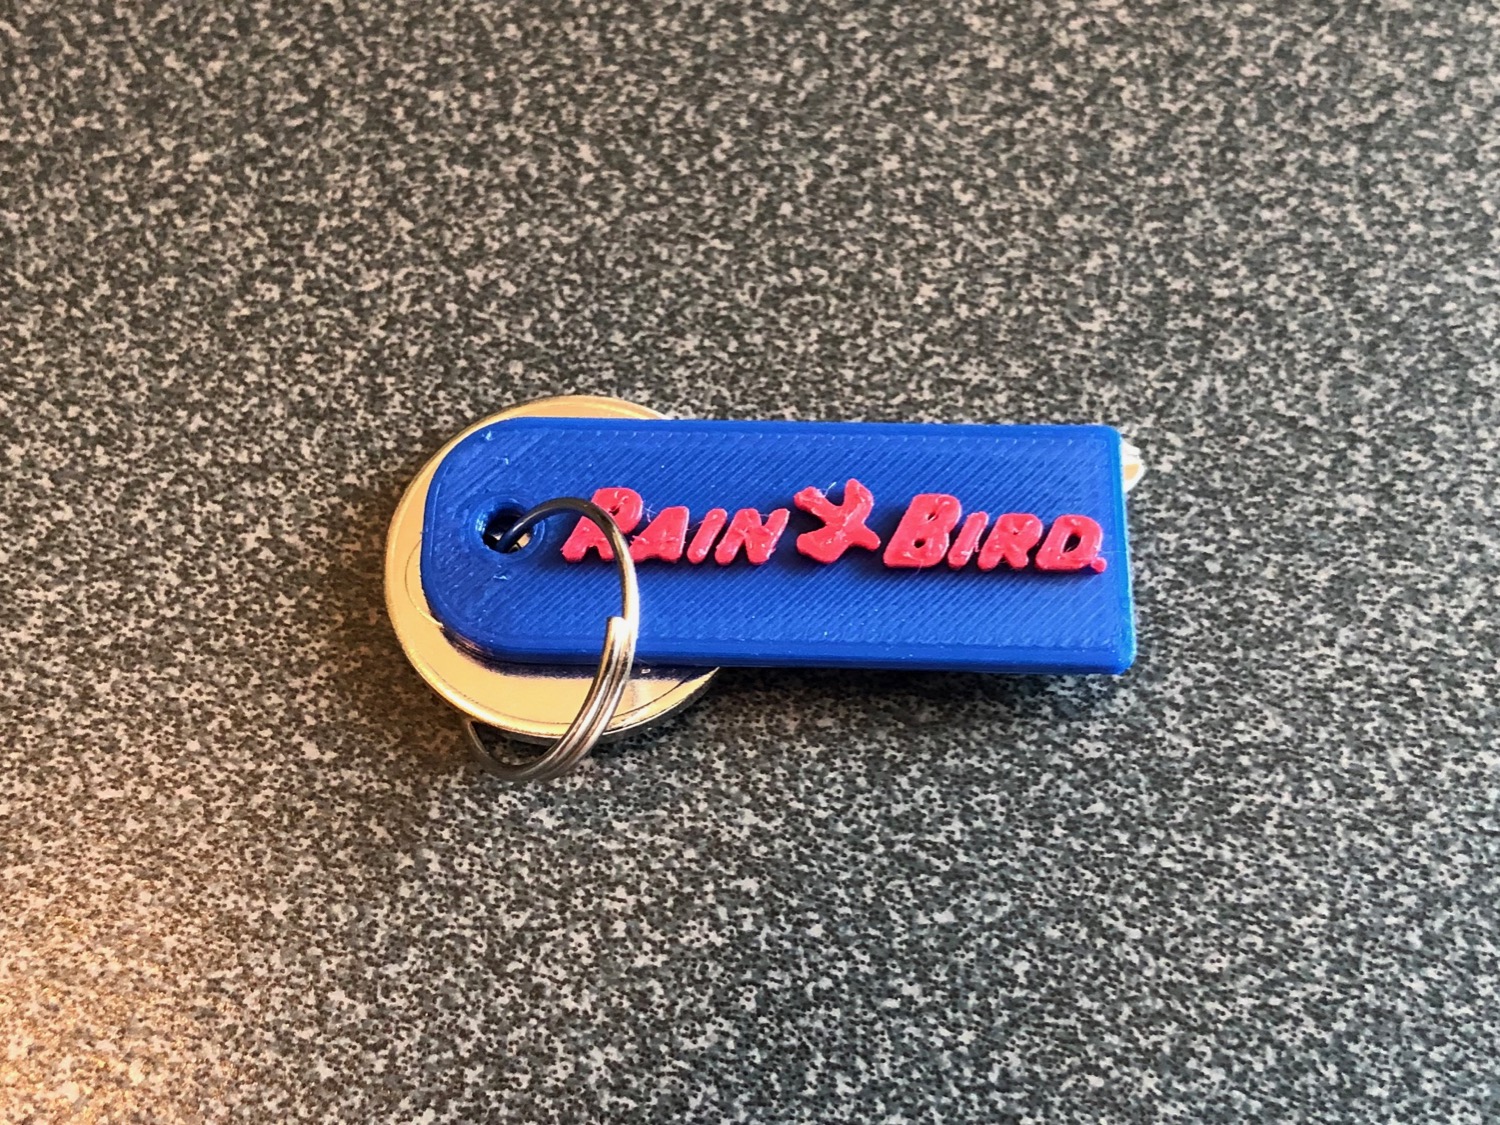 Key fob for RainBird controller box key